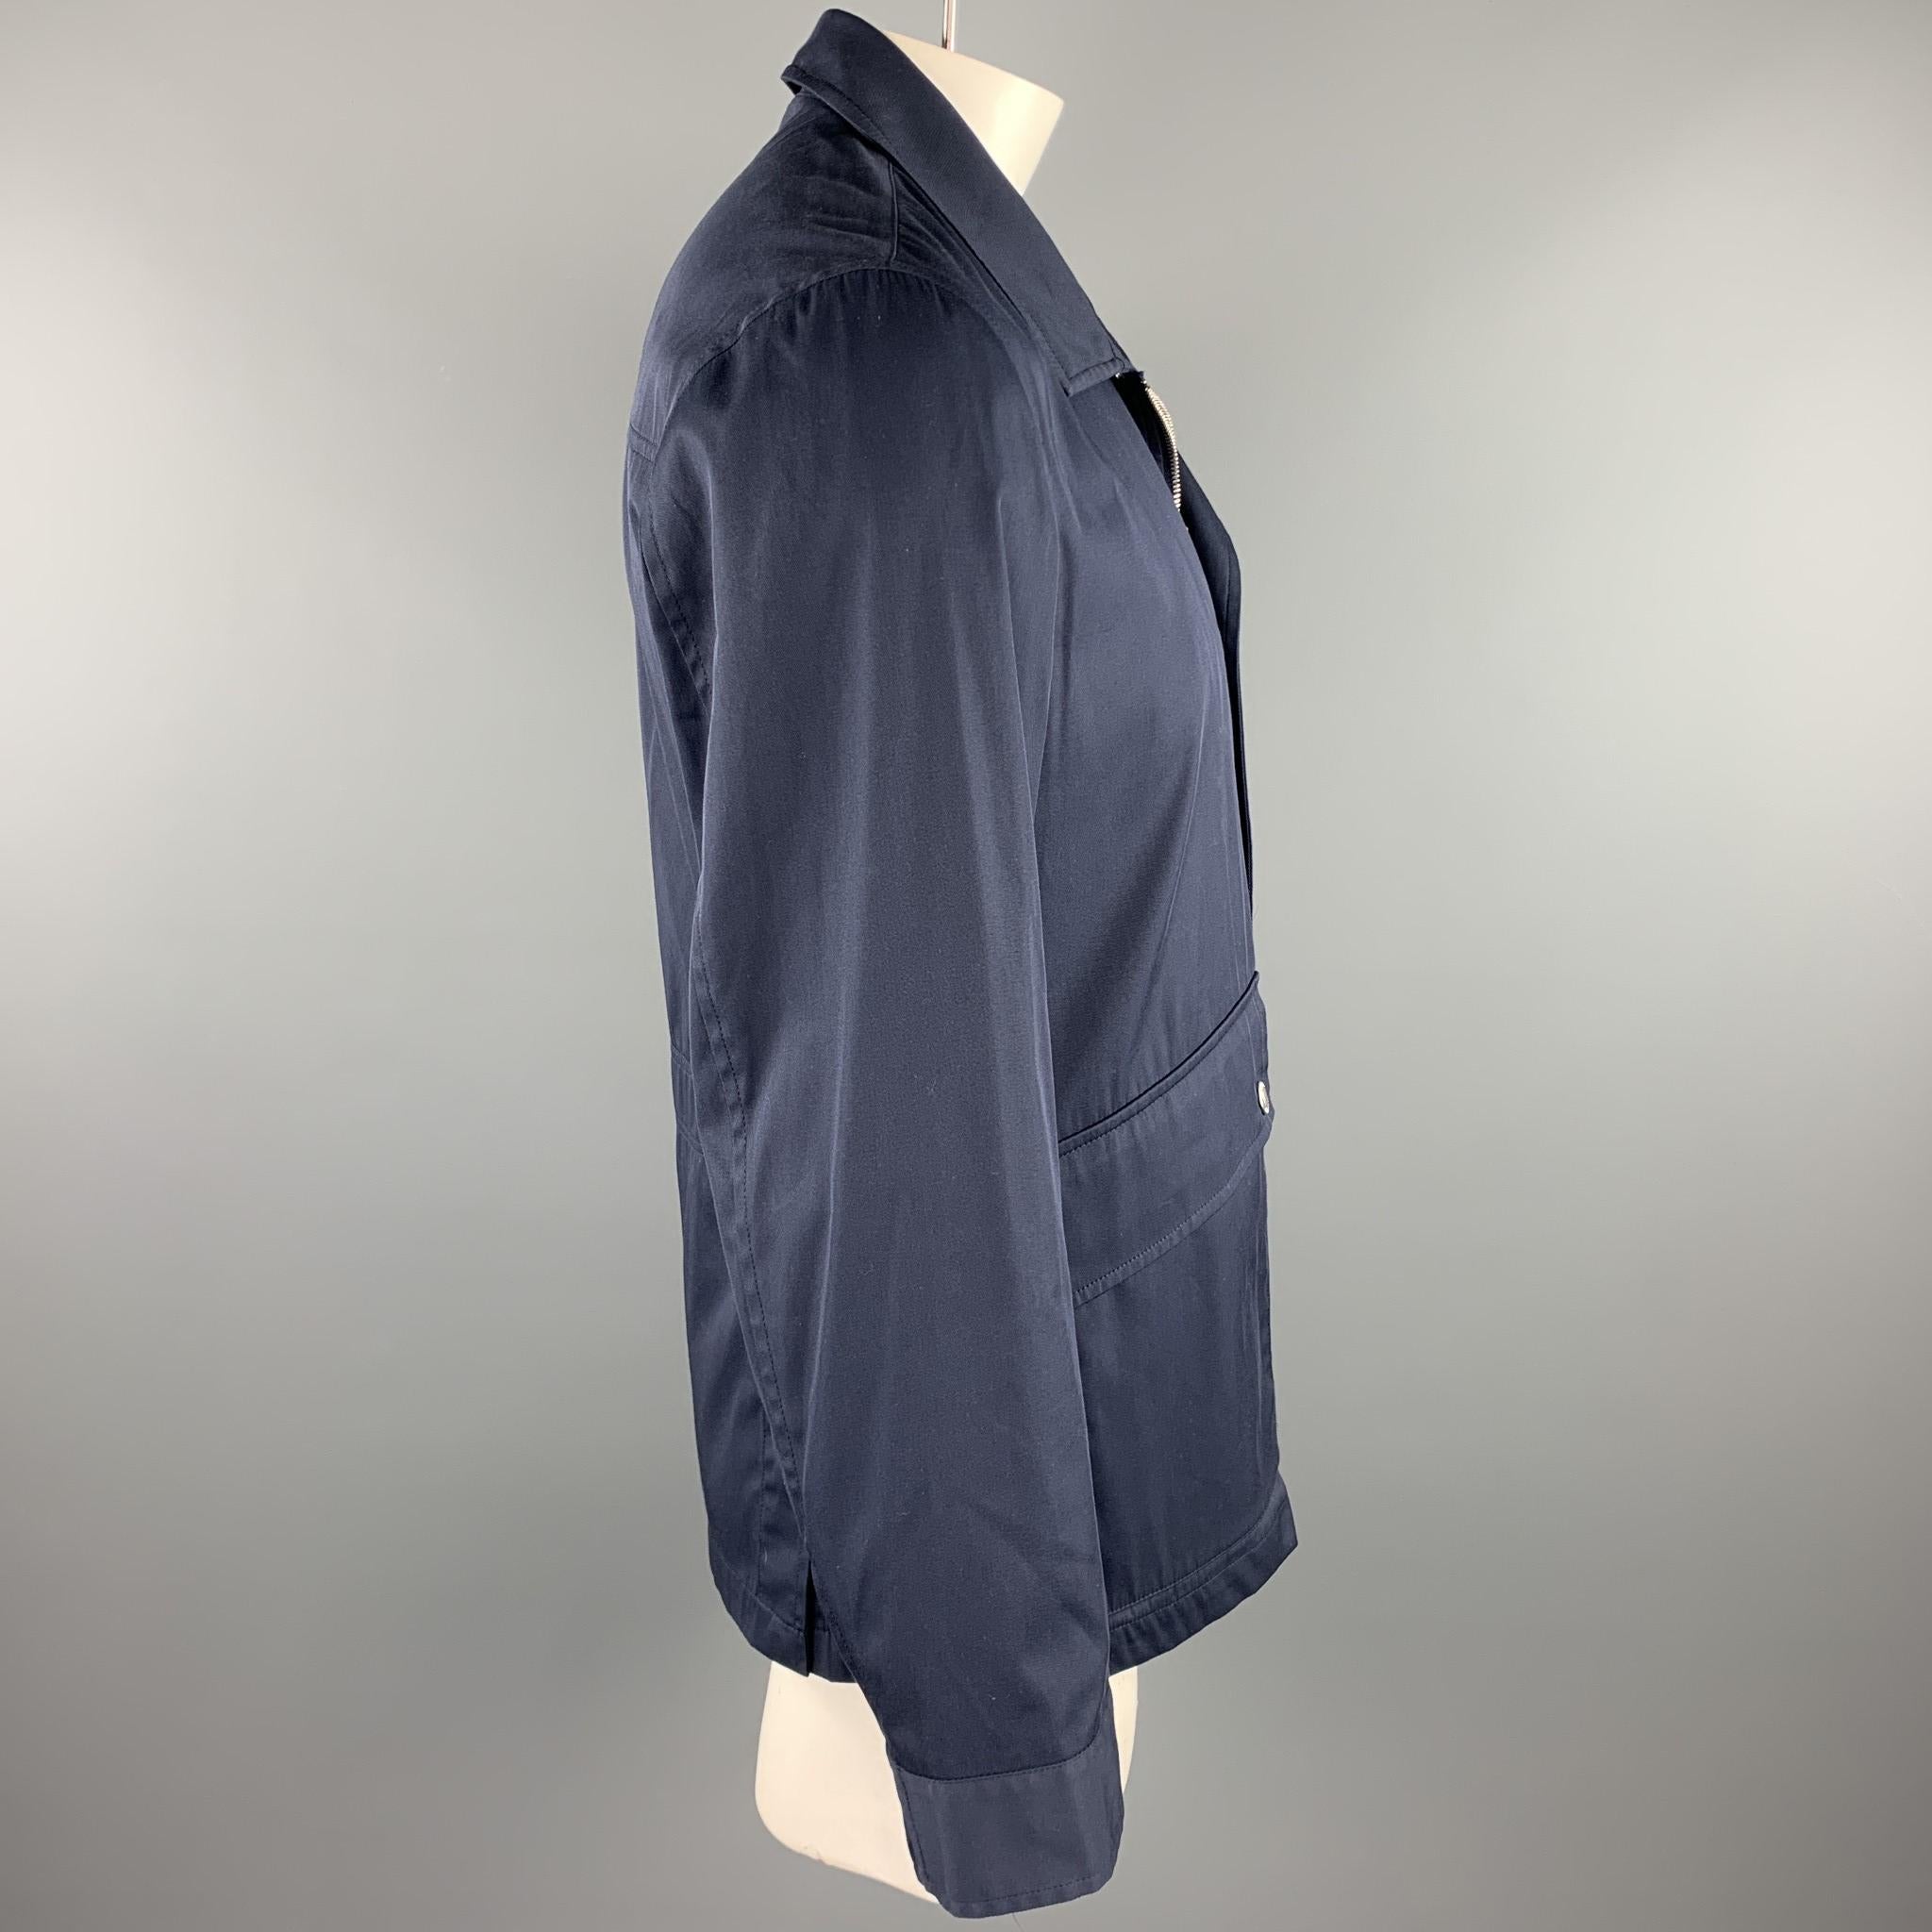 Black BRUNELLO CUCINELLI Size 42 Navy Cotton Blend Zip & Snaps Jacket